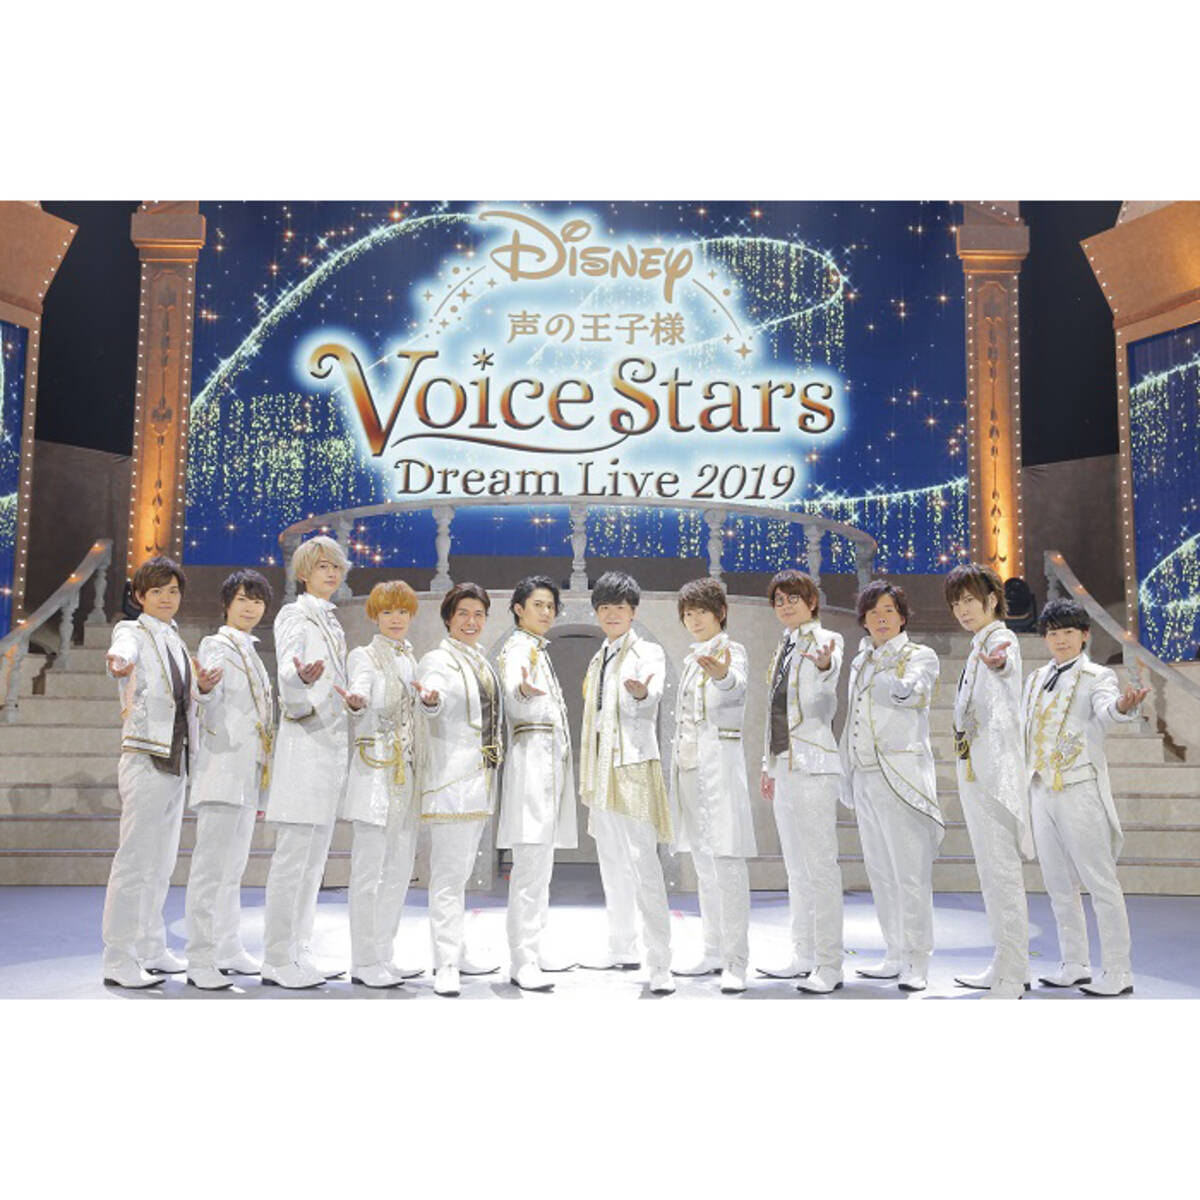 キャスト12人が王子様衣装で登場！“Disney 声の王子様 Voice Stars Dream Live 2019”レポート  (2019年7月17日) エキサイトニュース